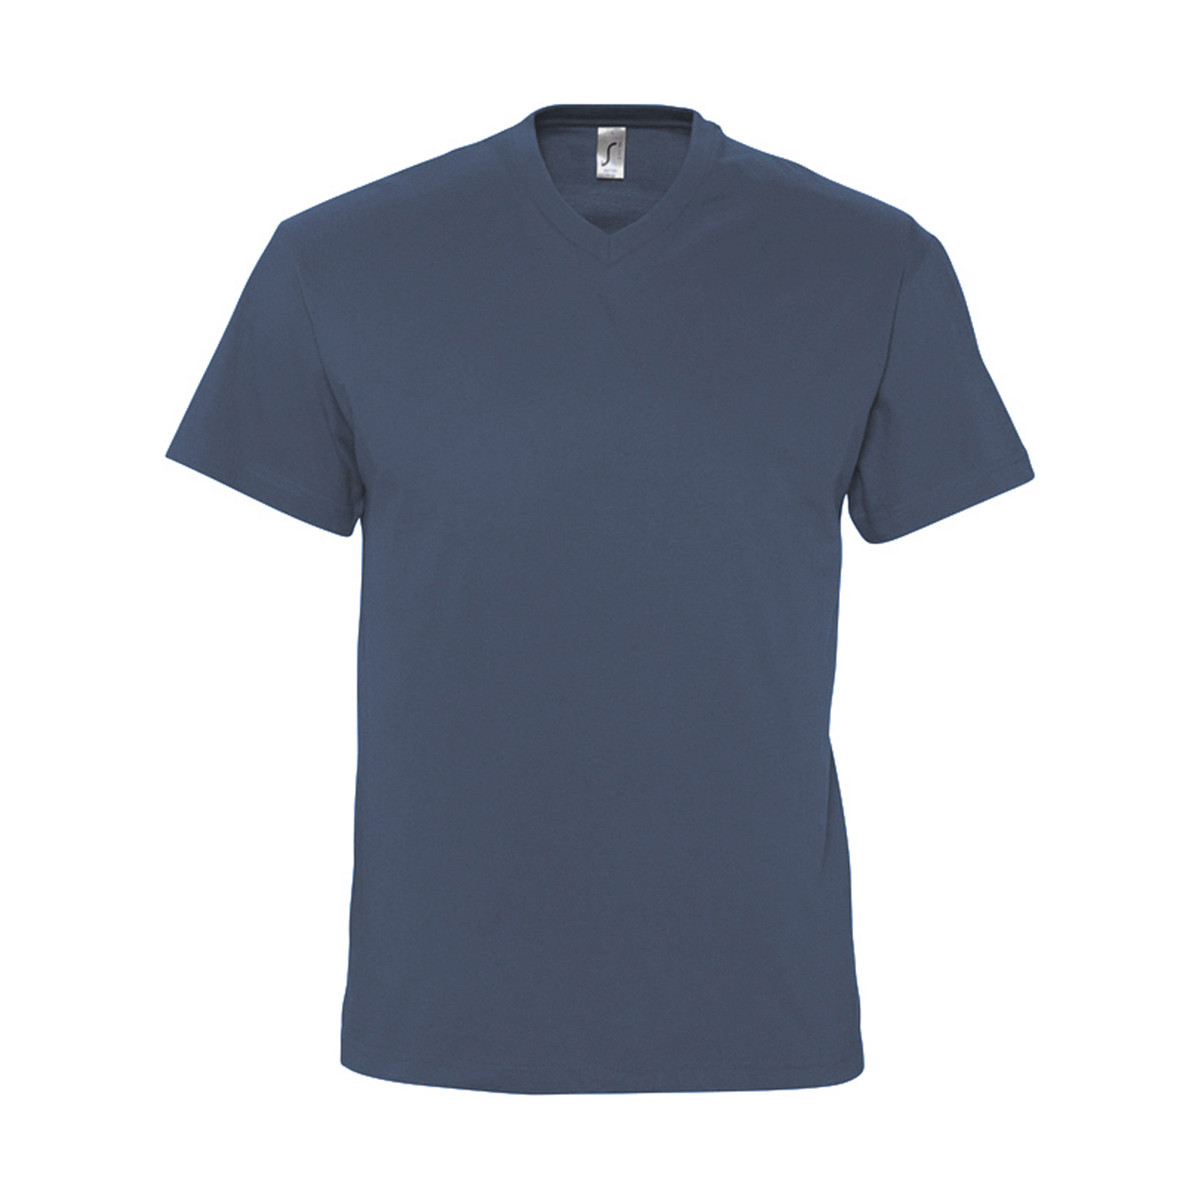 Textil Homem T-Shirt mangas curtas Sols VICTORY COLORS Azul